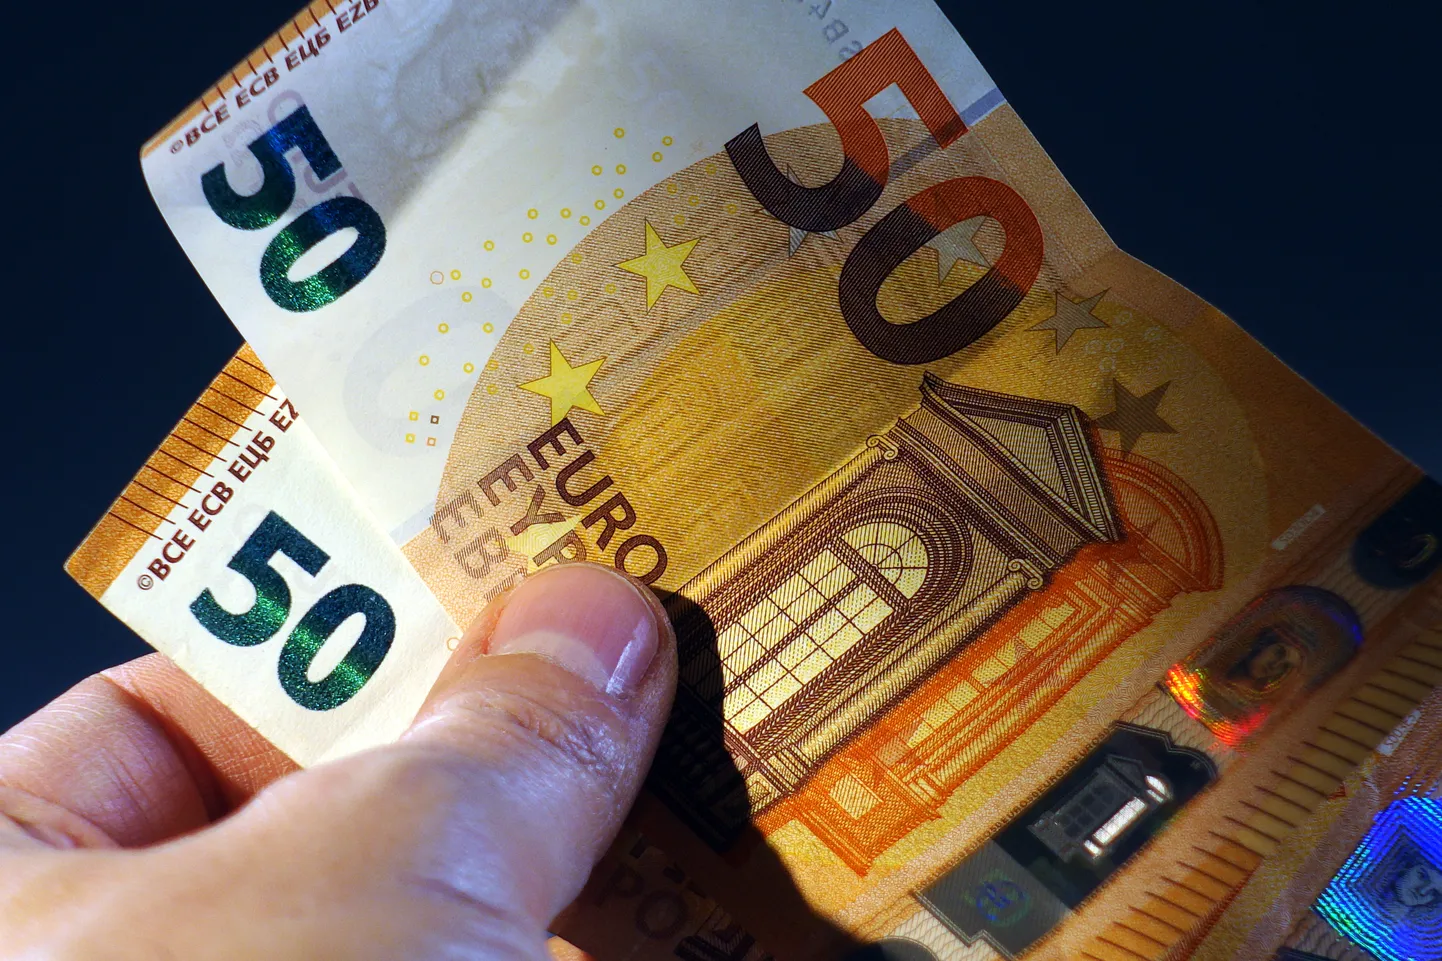 Банкноты номиналом 50 евро. Изображение является иллюстративным.